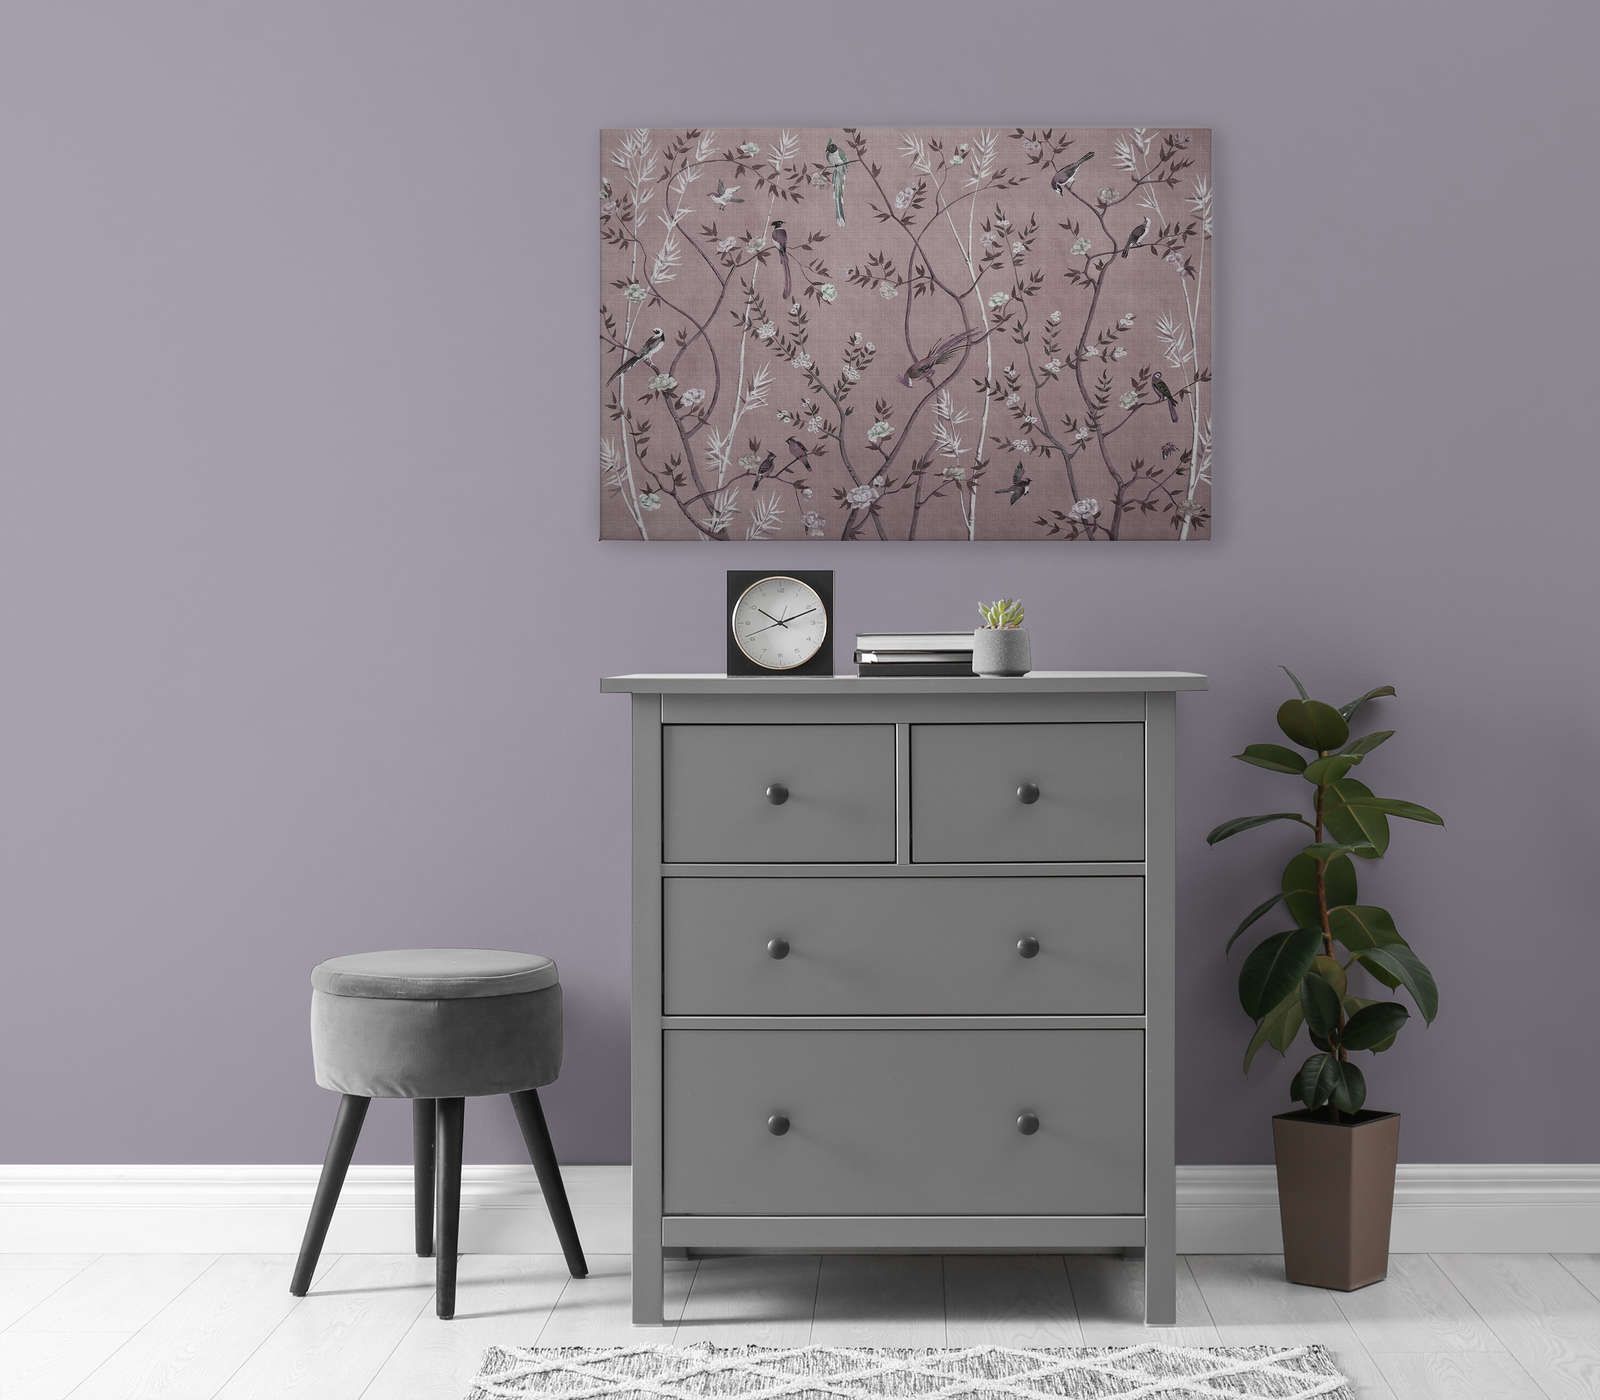             Tea Room 3 - Leinwandbild Vögel & Blüten Design in Rosa & Weiß – 0,90 m x 0,60 m
        